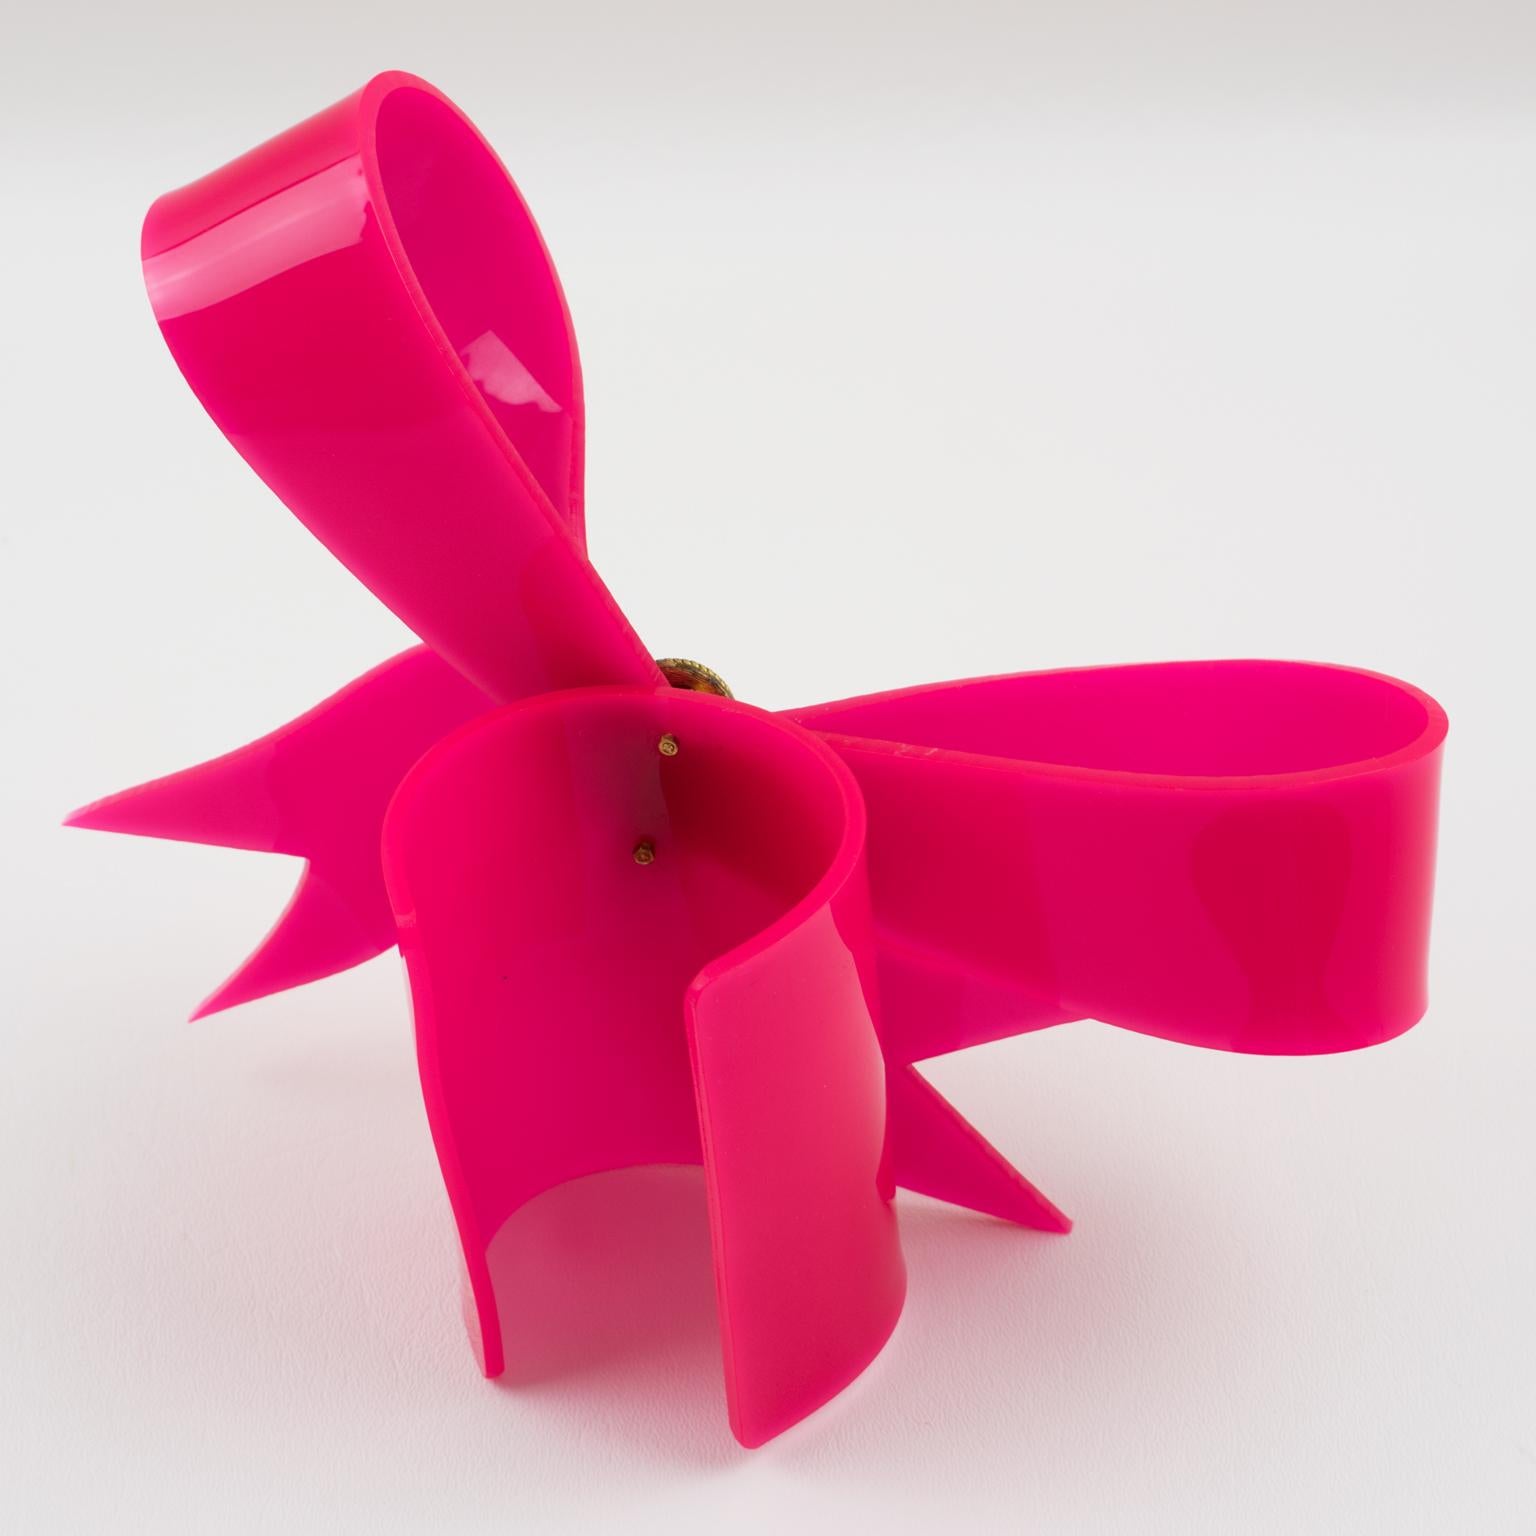 Vivienne Westwood Prototype Cuff Bangle Bracelet Pink Acrylic Bow 2